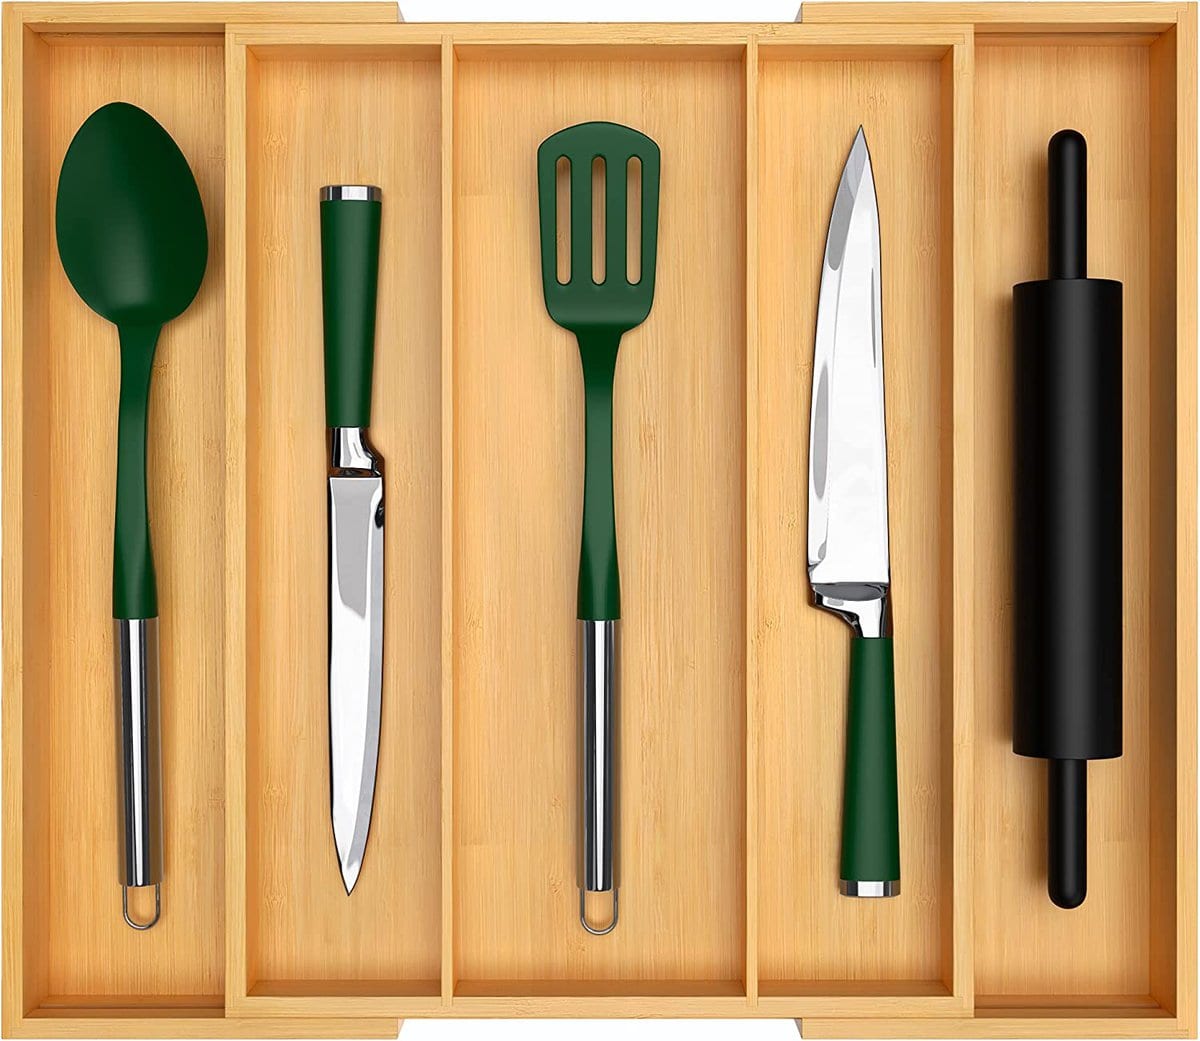 厨房组织理念-一个竹器具组织者，拥有刀，锅铲和勺子。